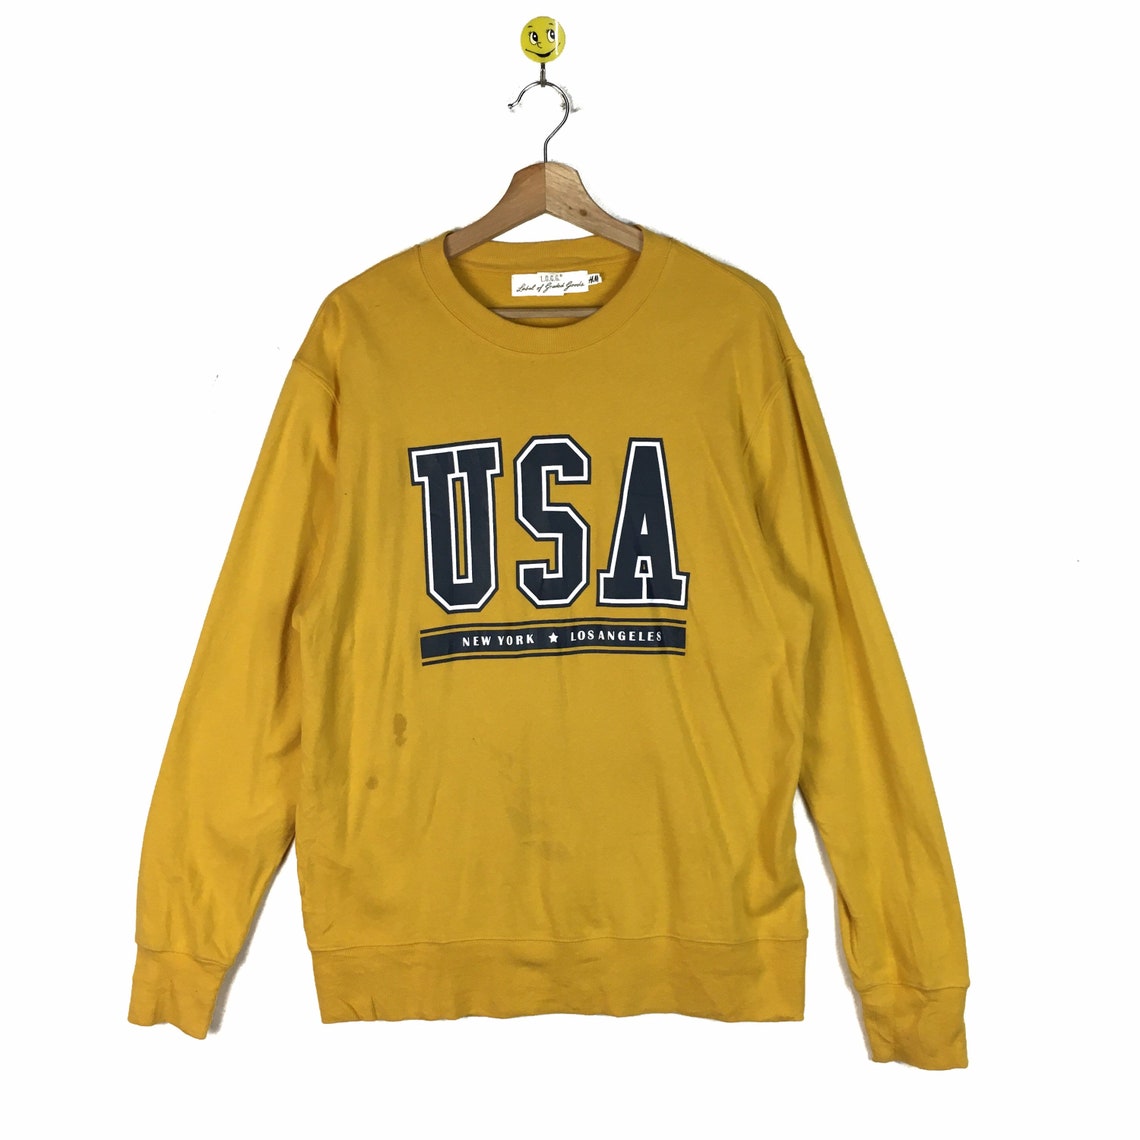 Rare Los Angeles USA sweatshirt Los Angeles pullover Los | Etsy